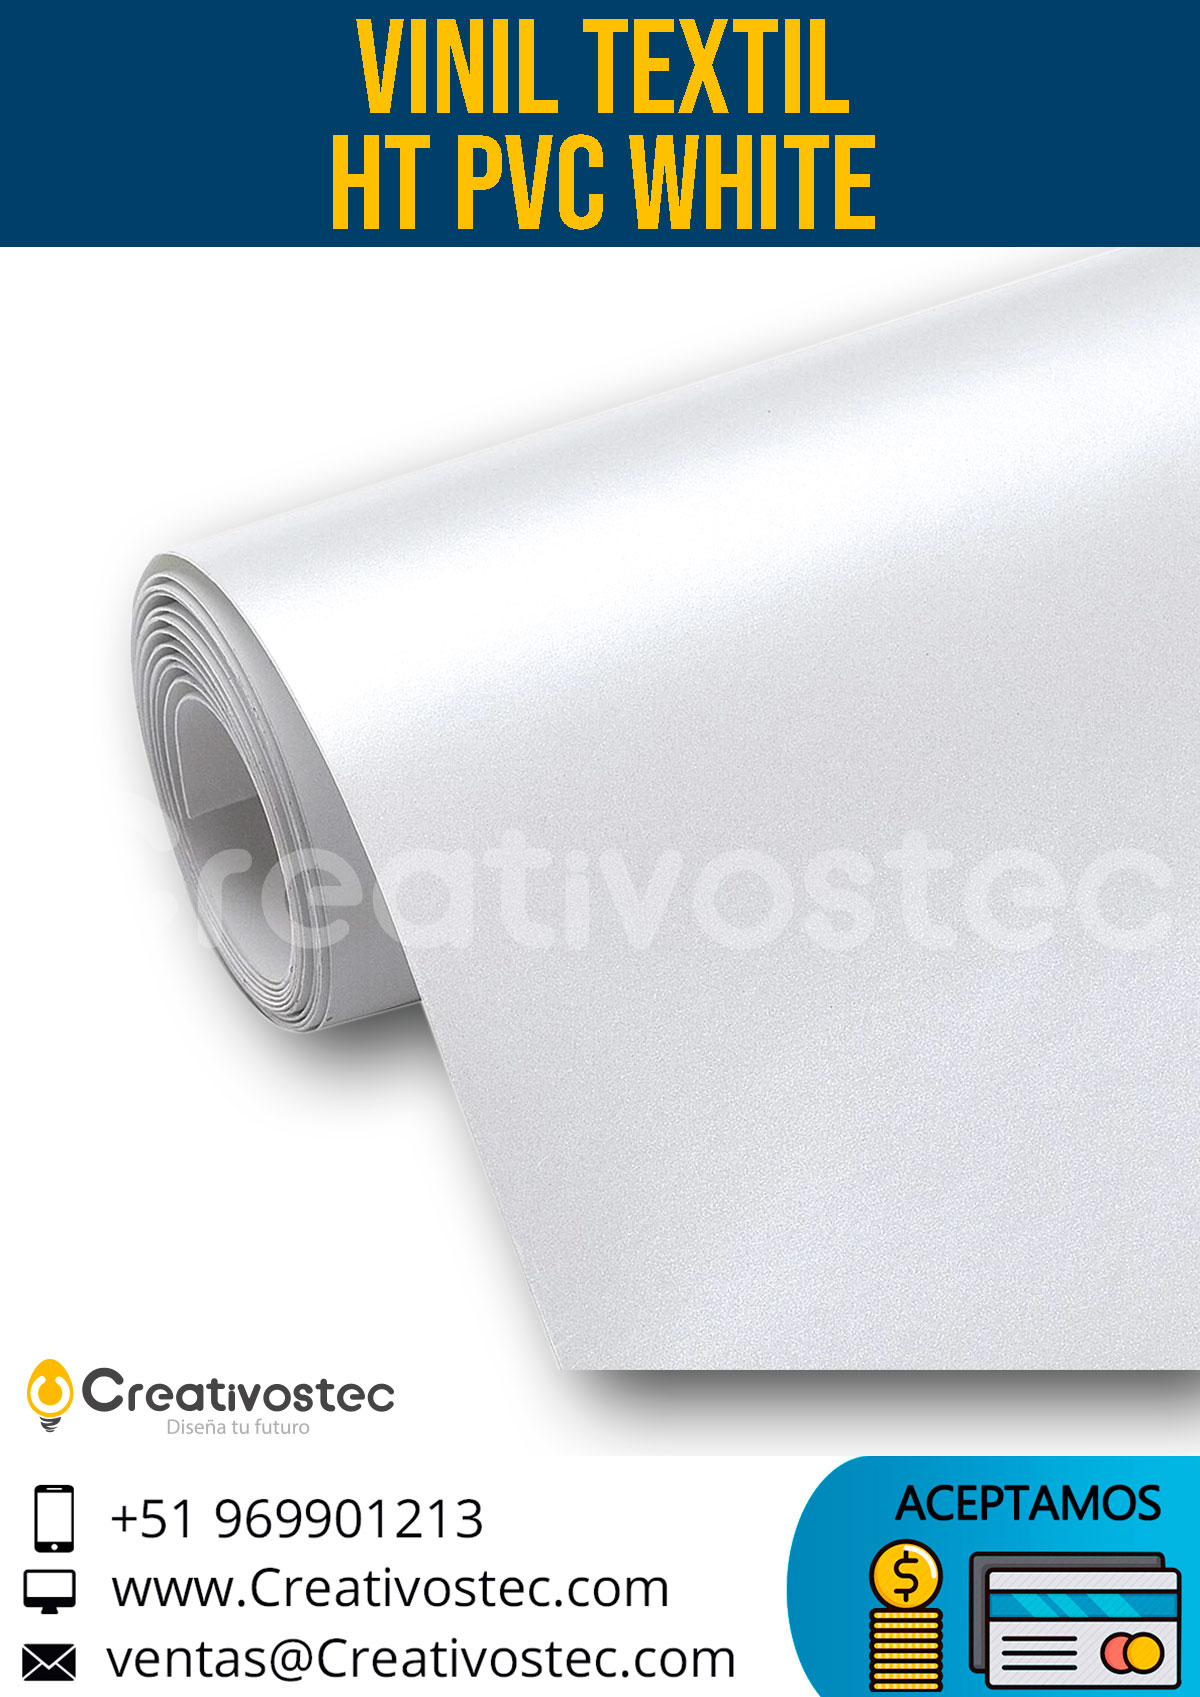 VINIL TEXTIL PVC BLANCO 51cm X 30 CM - Creativostec